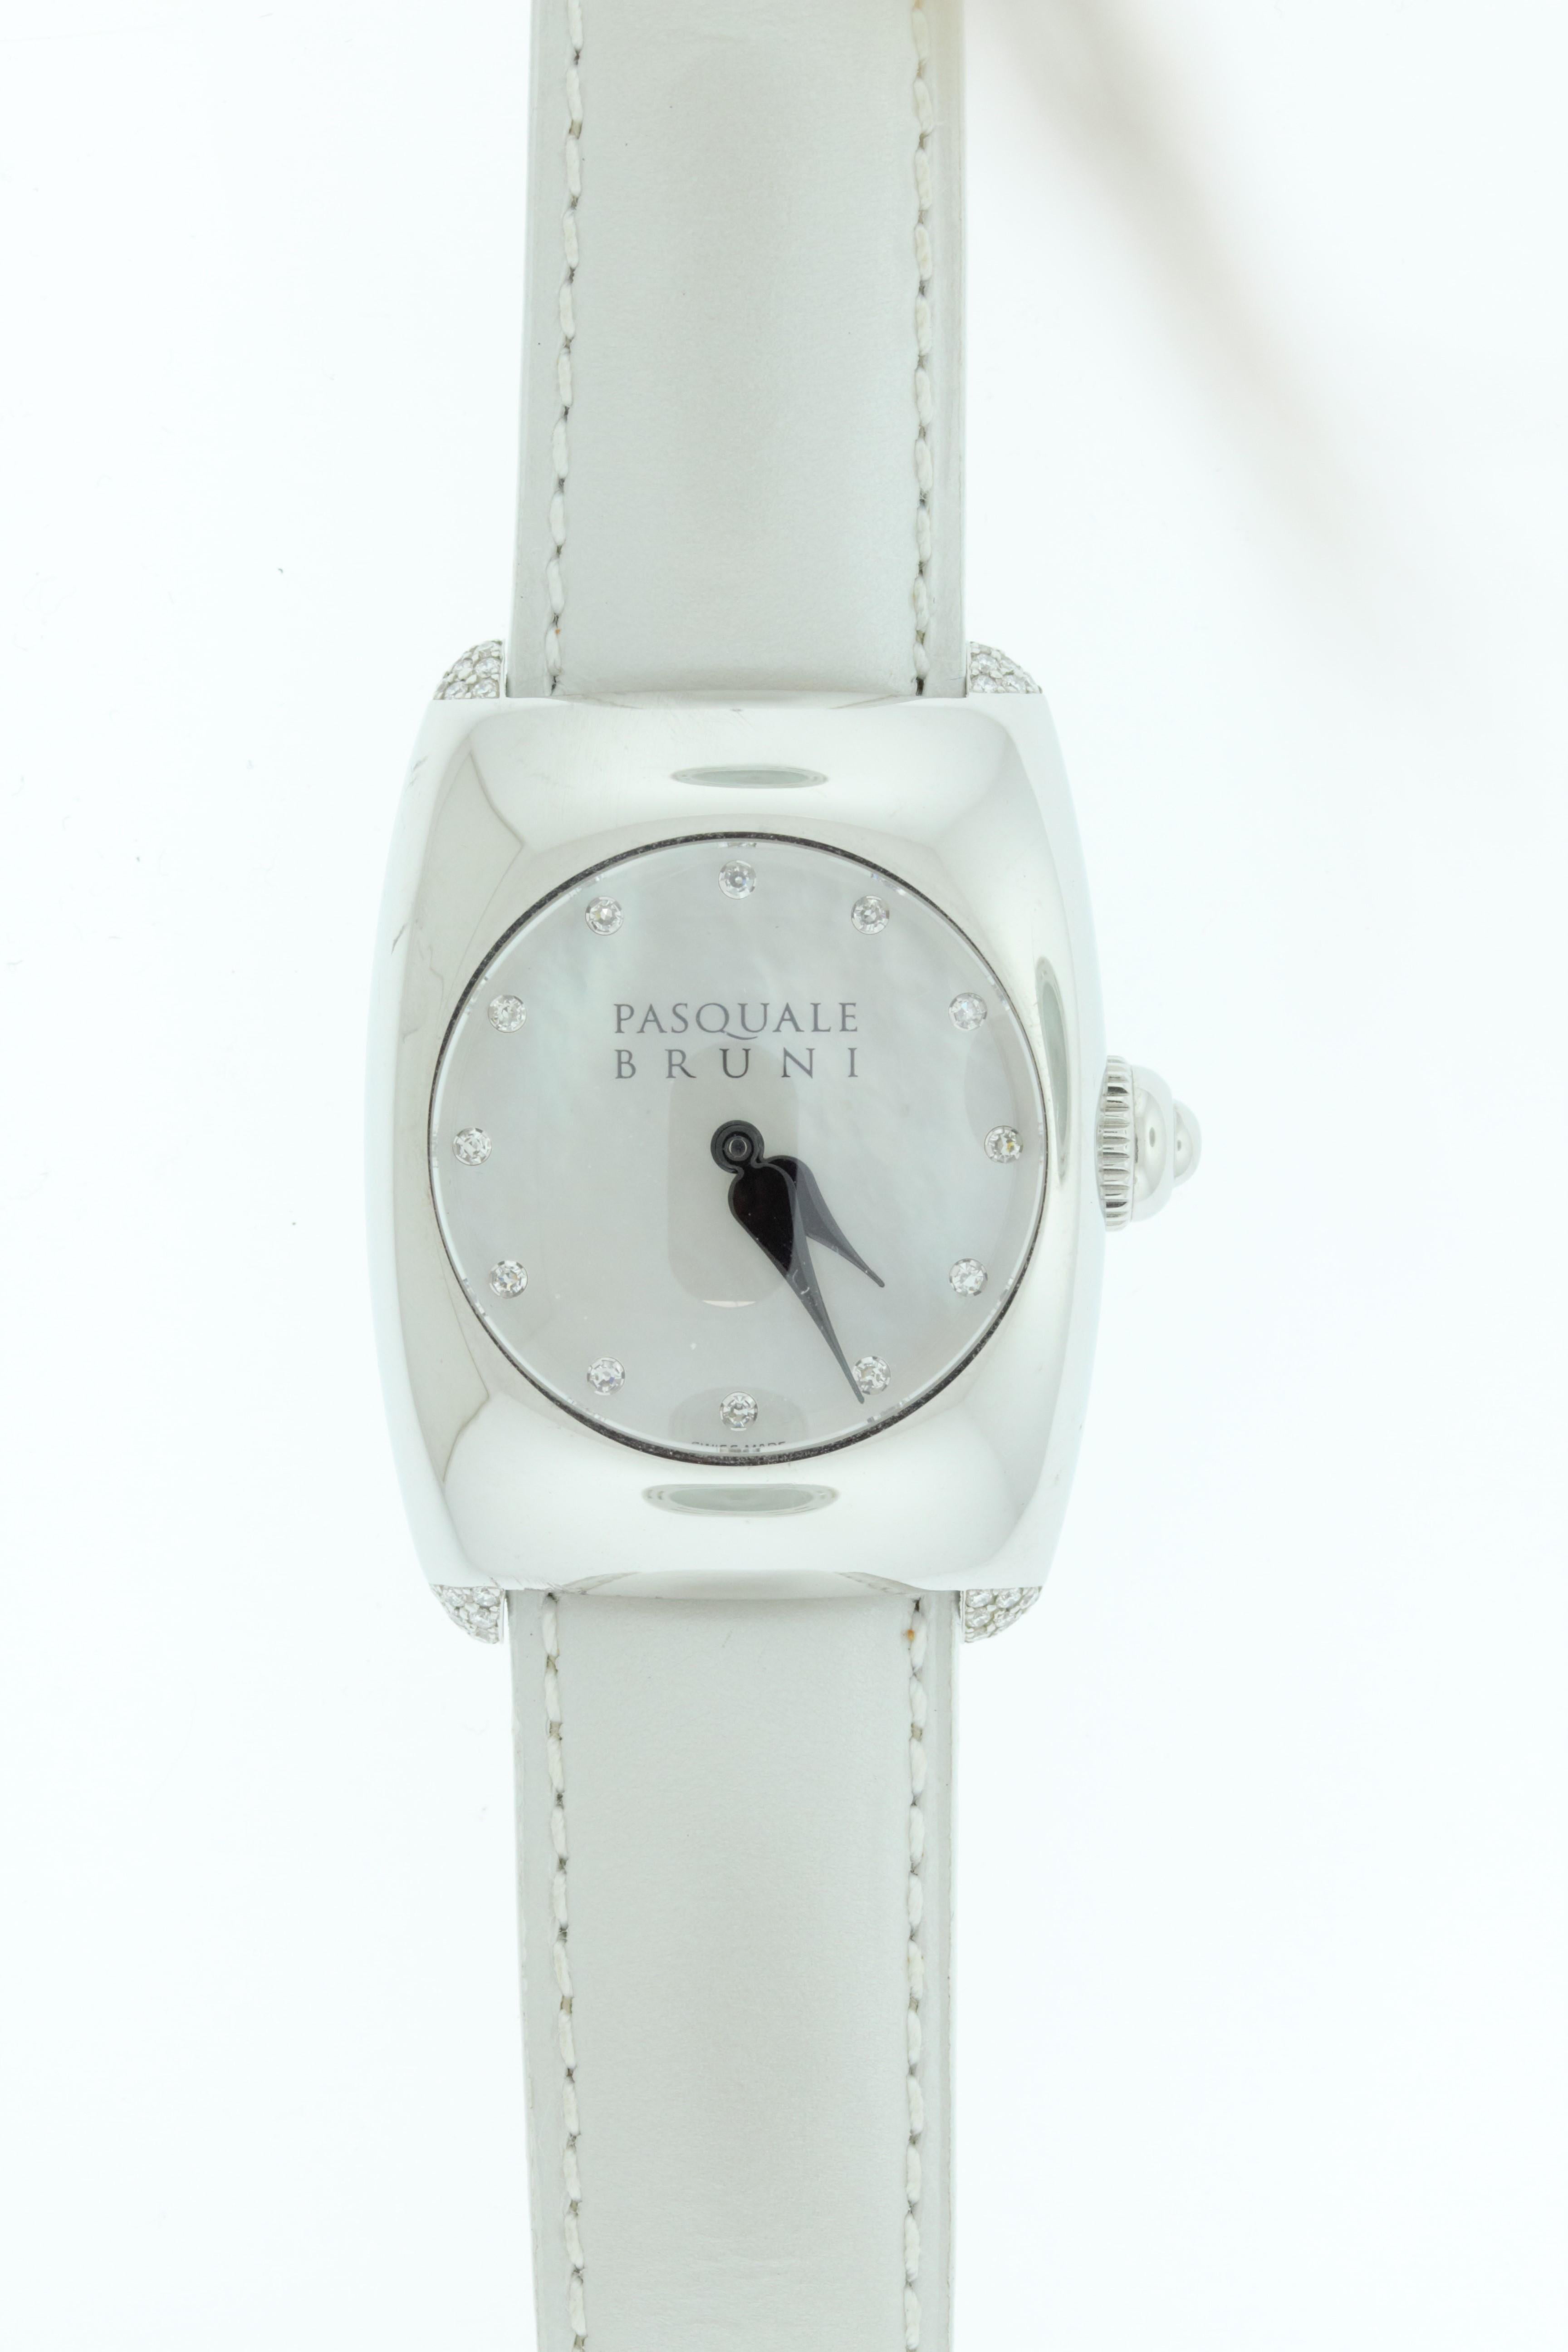 Cette montre pour femmes est dotée d'une lunette en acier inoxydable, d'un cadran blanc, d'index en diamant et d'un bracelet en cuir blanc. Fabriqué en Suisse par Pasquale Bruni. 

